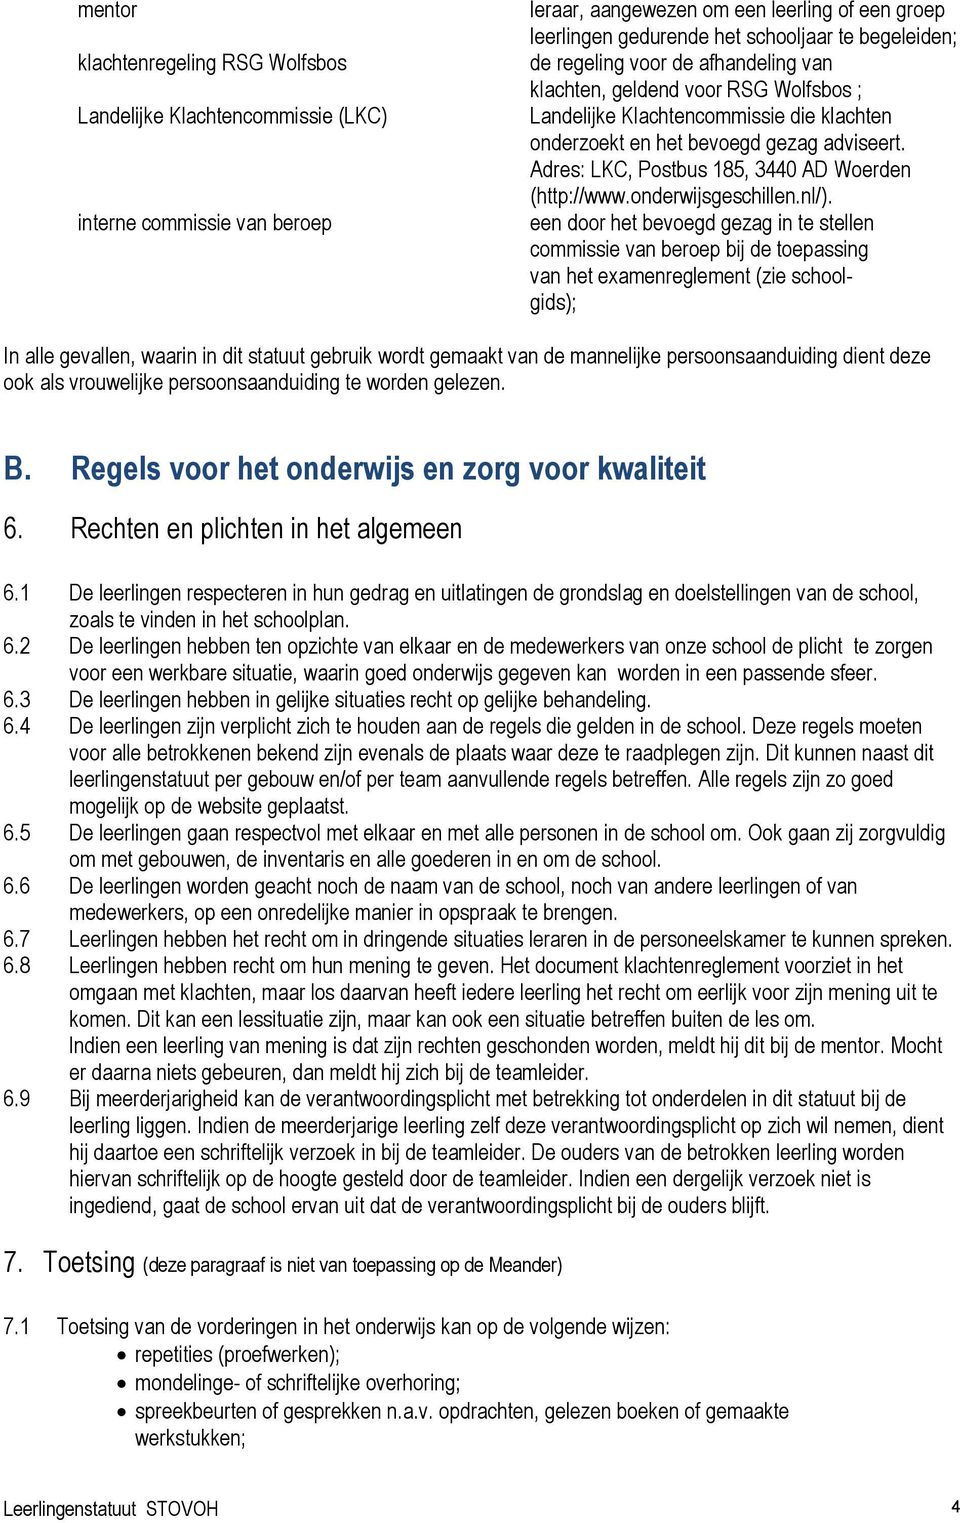 Adres: LKC, Postbus 185, 3440 AD Woerden (http://www.onderwijsgeschillen.nl/).